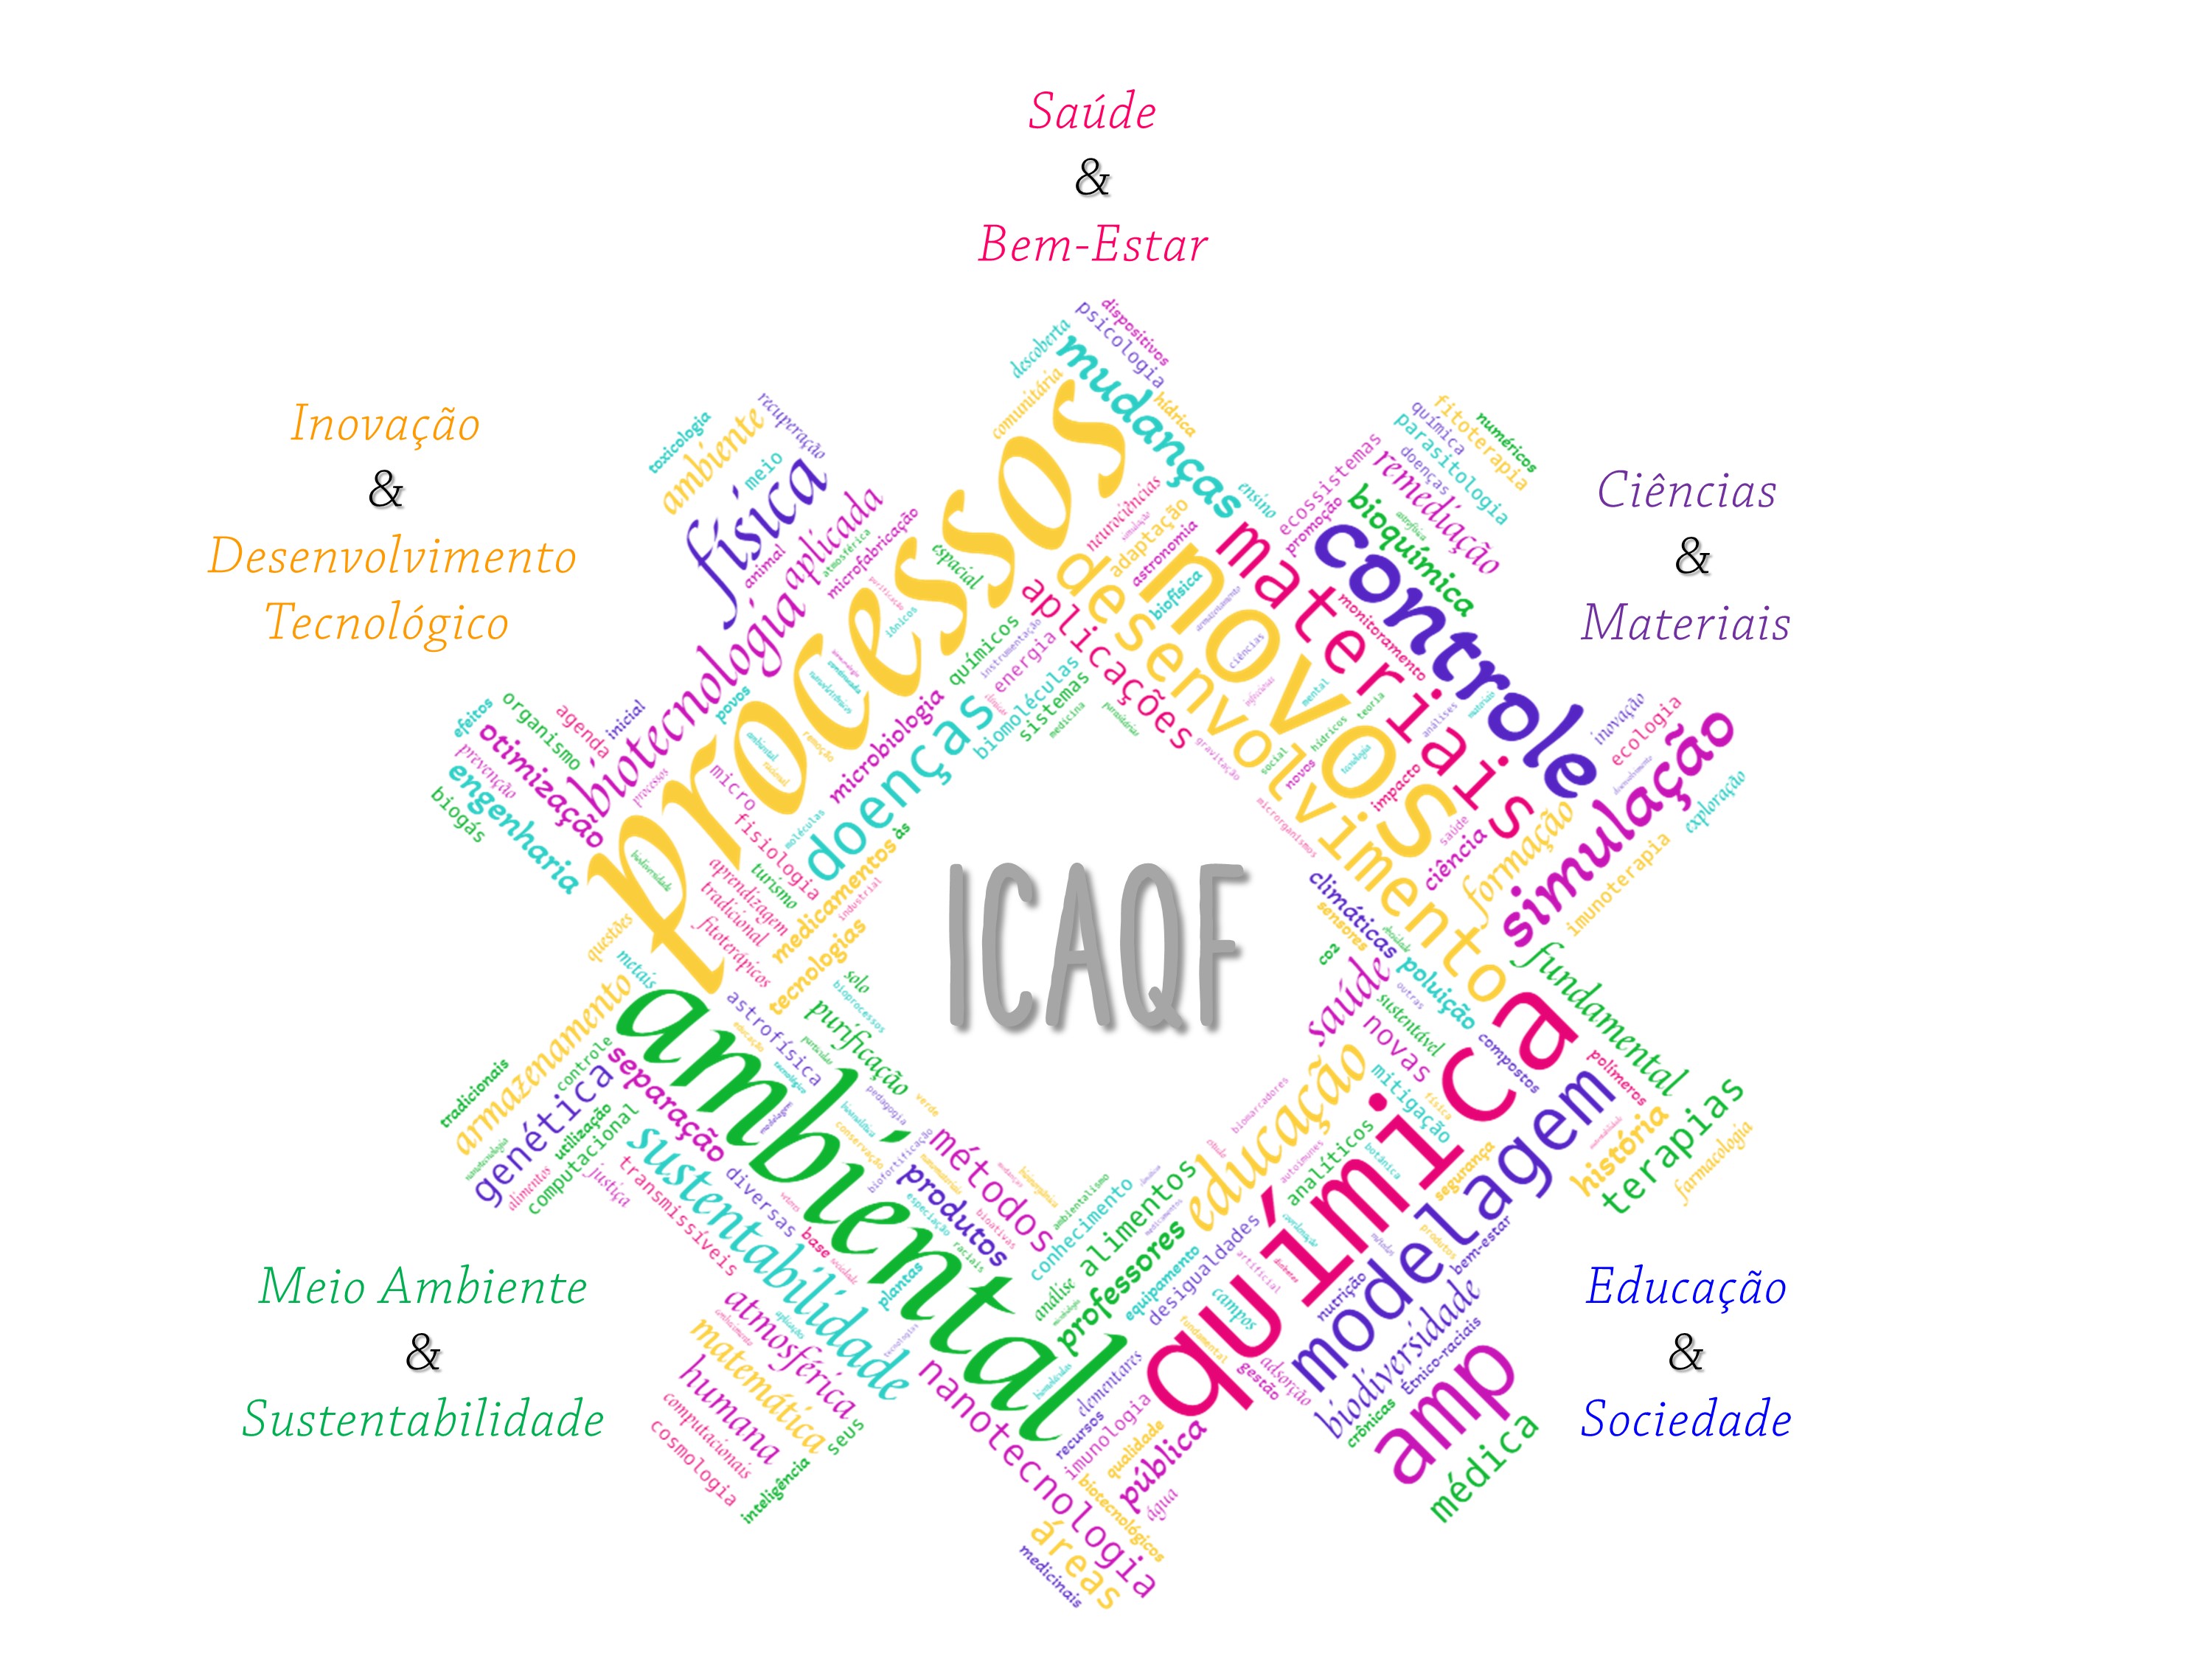 Eixos de pesquisa ICAQF imagem